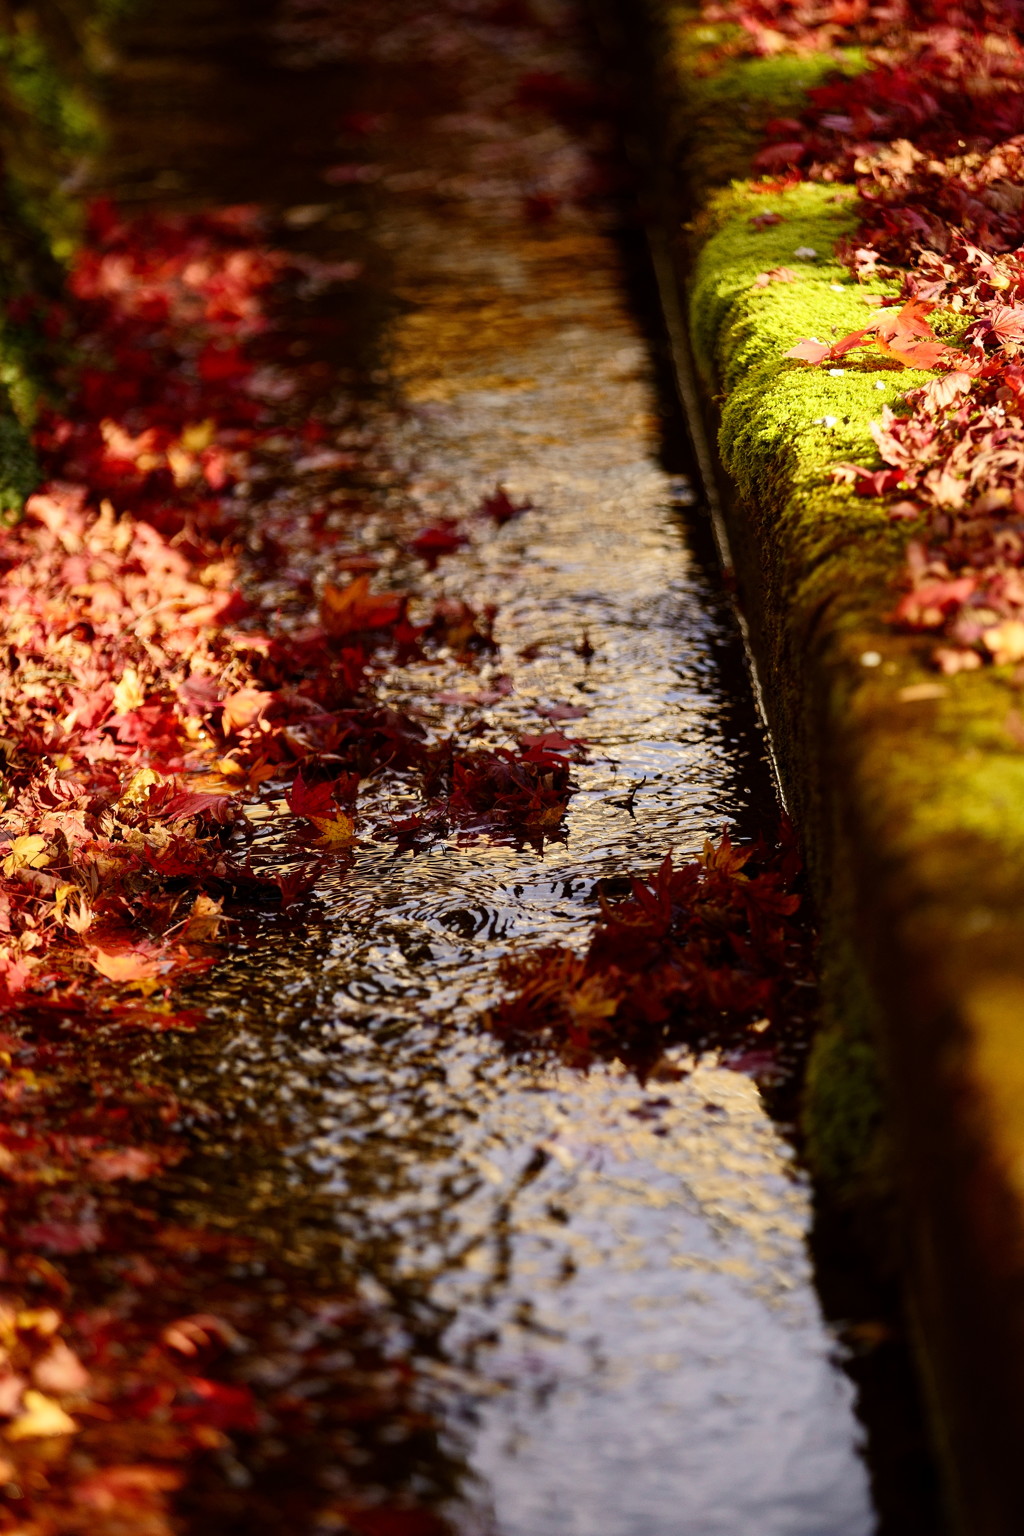 苔の緑、もみじ落葉の赤、流れる水